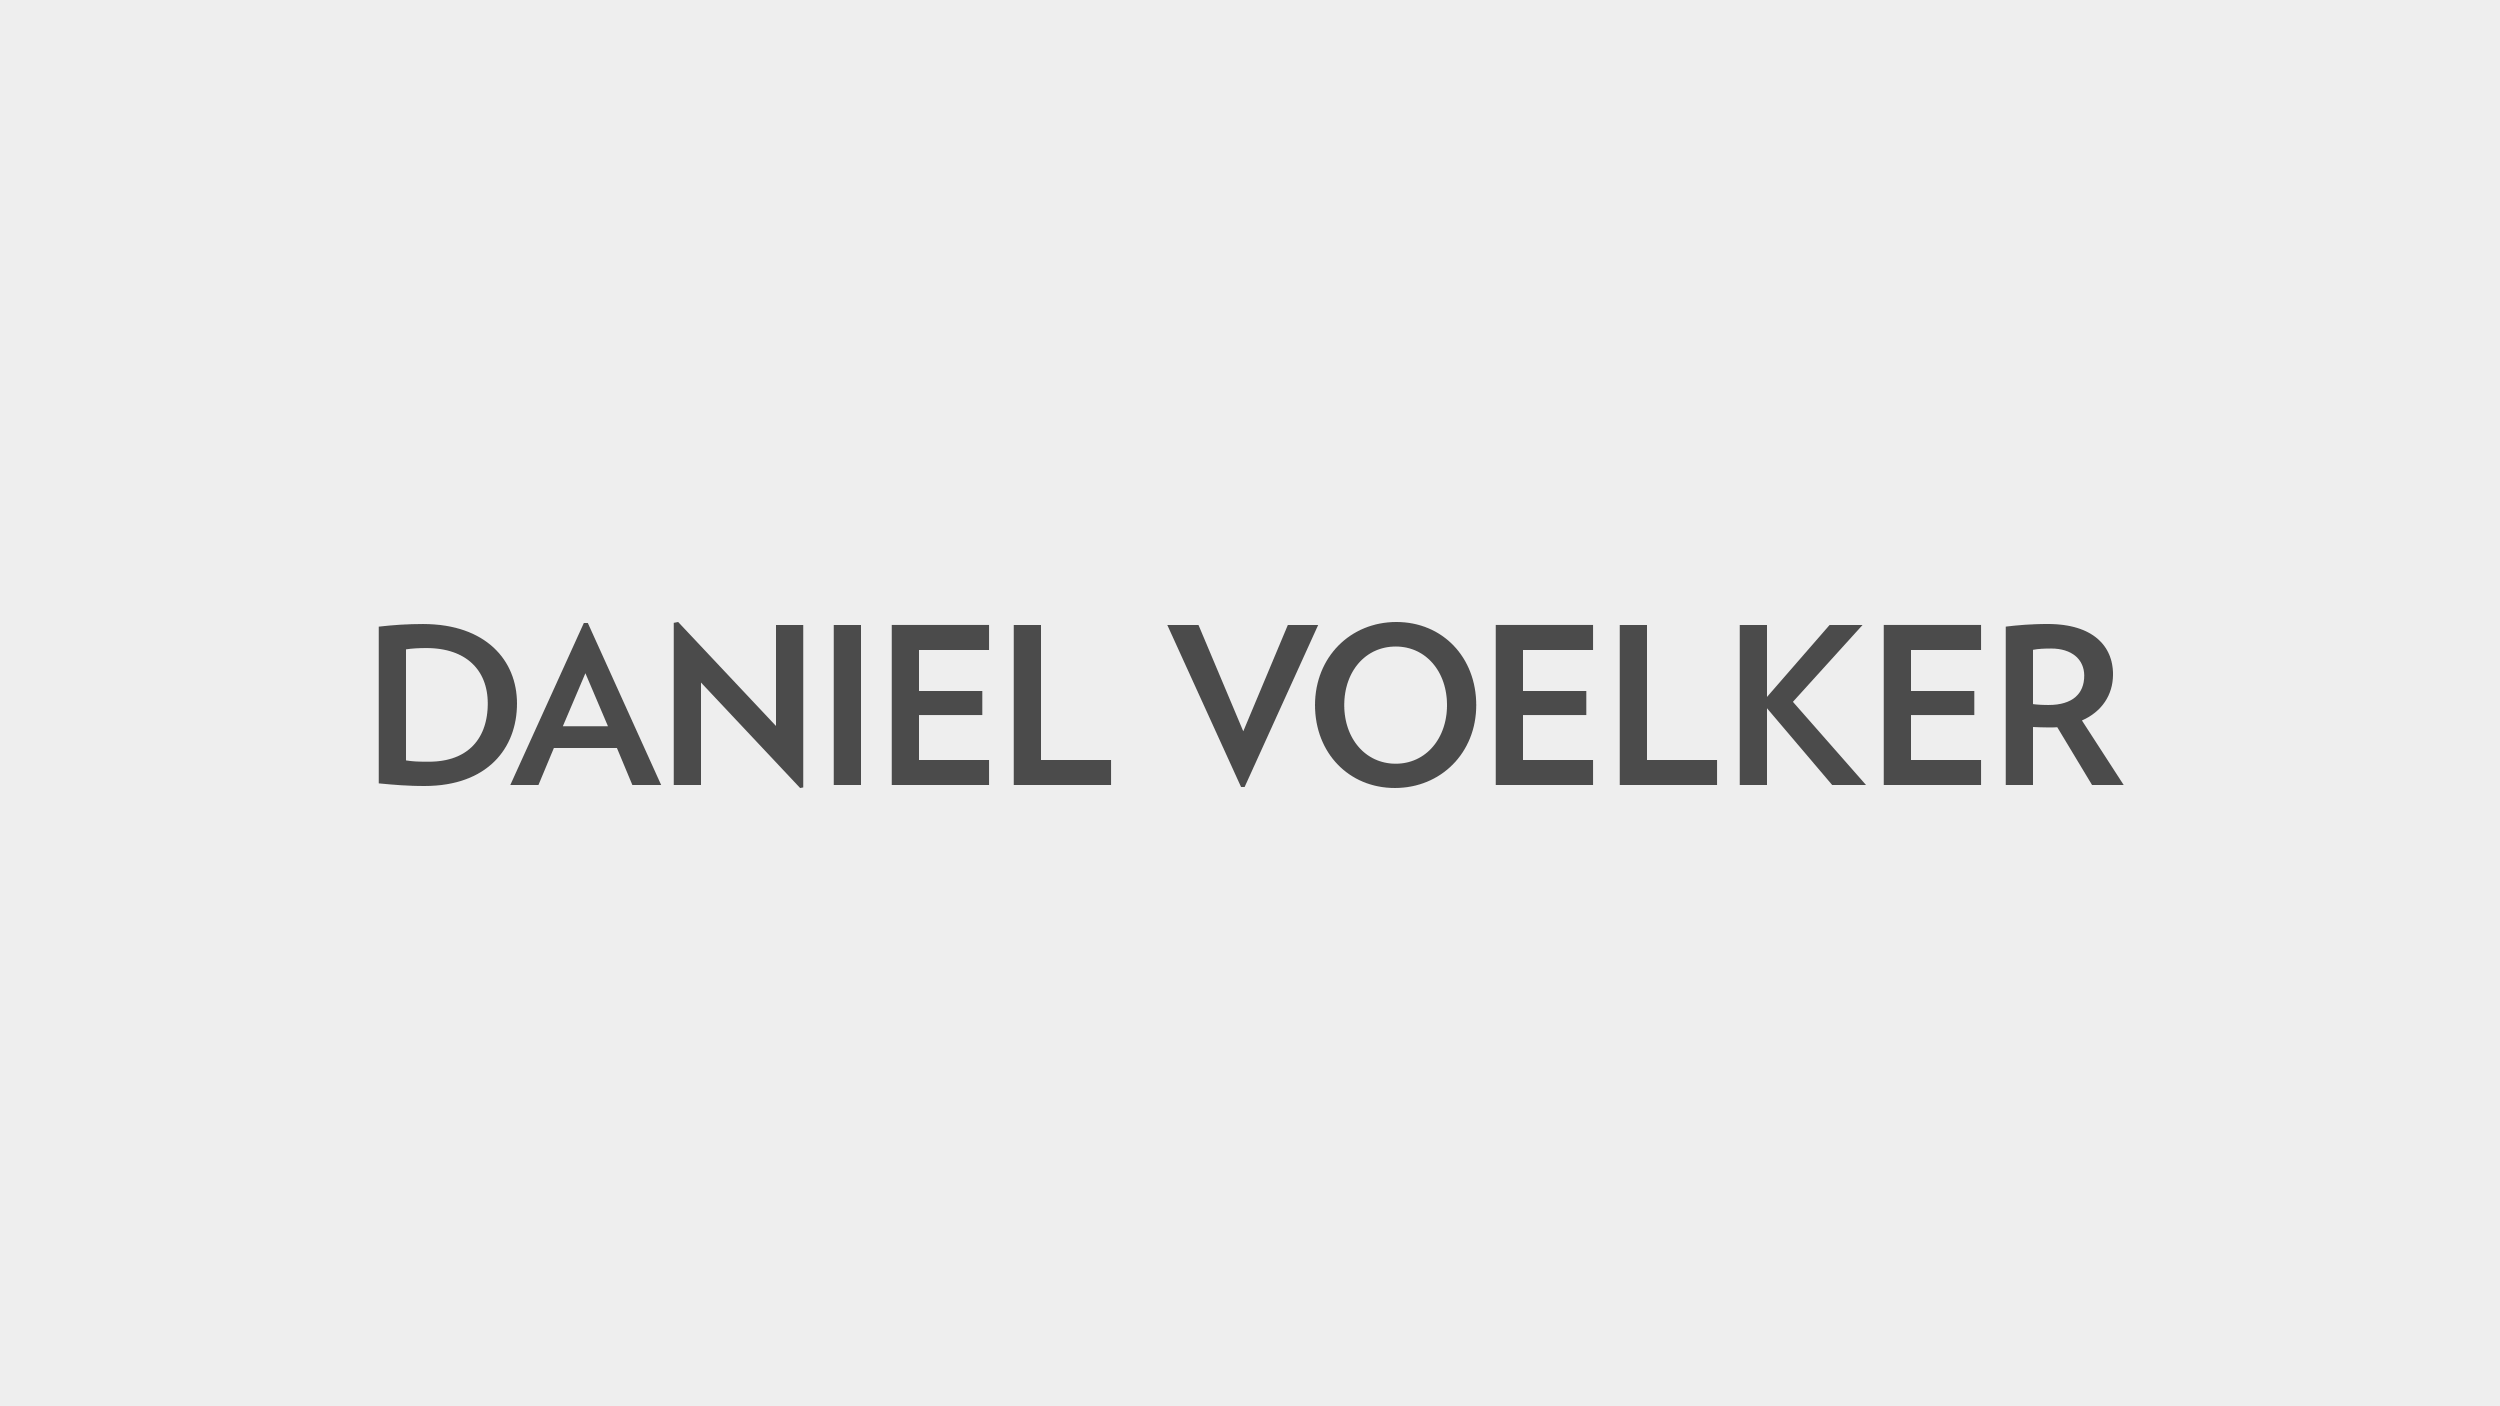 SOAP-IMAGES_Clients_DANIEL-VOELKER.png